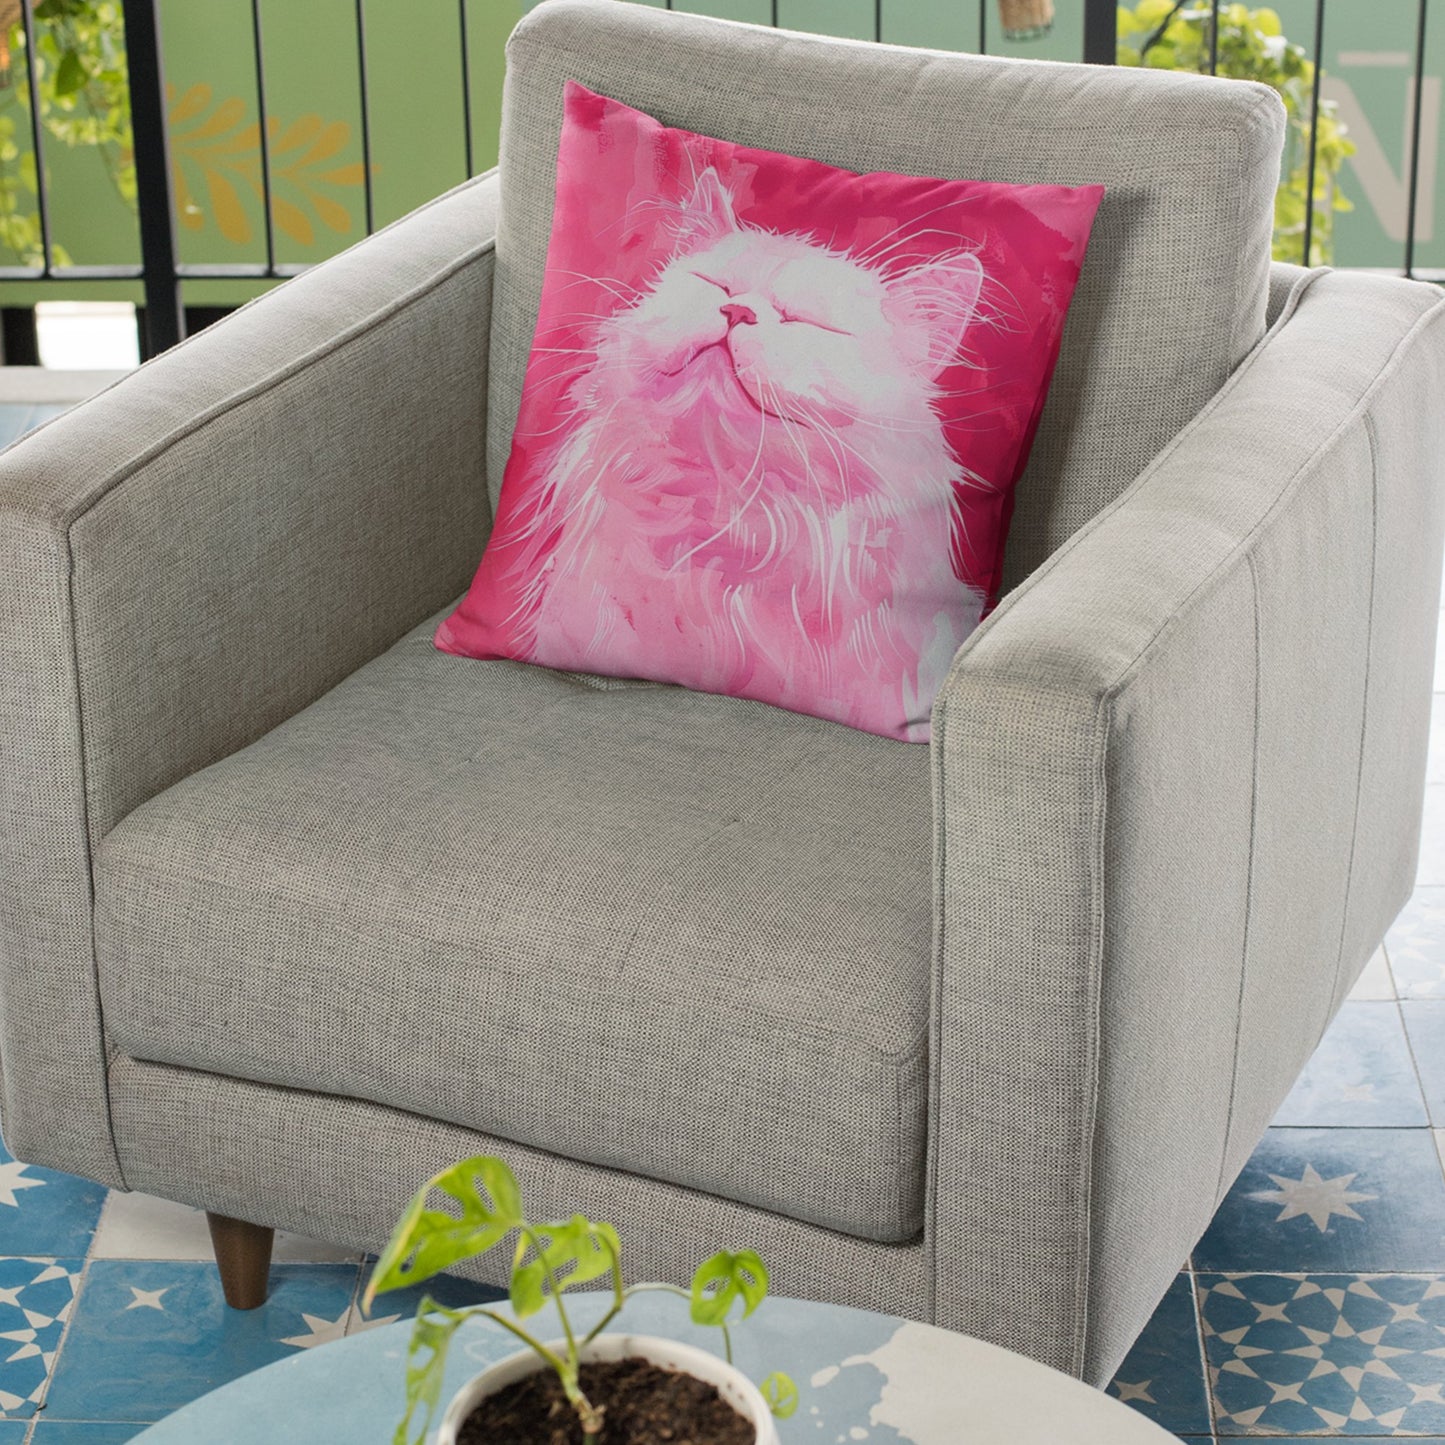 Original "Pink Bliss" Cat Pillow, Watercolor, Hot Pink White Cat Pillow - FlooredByArt